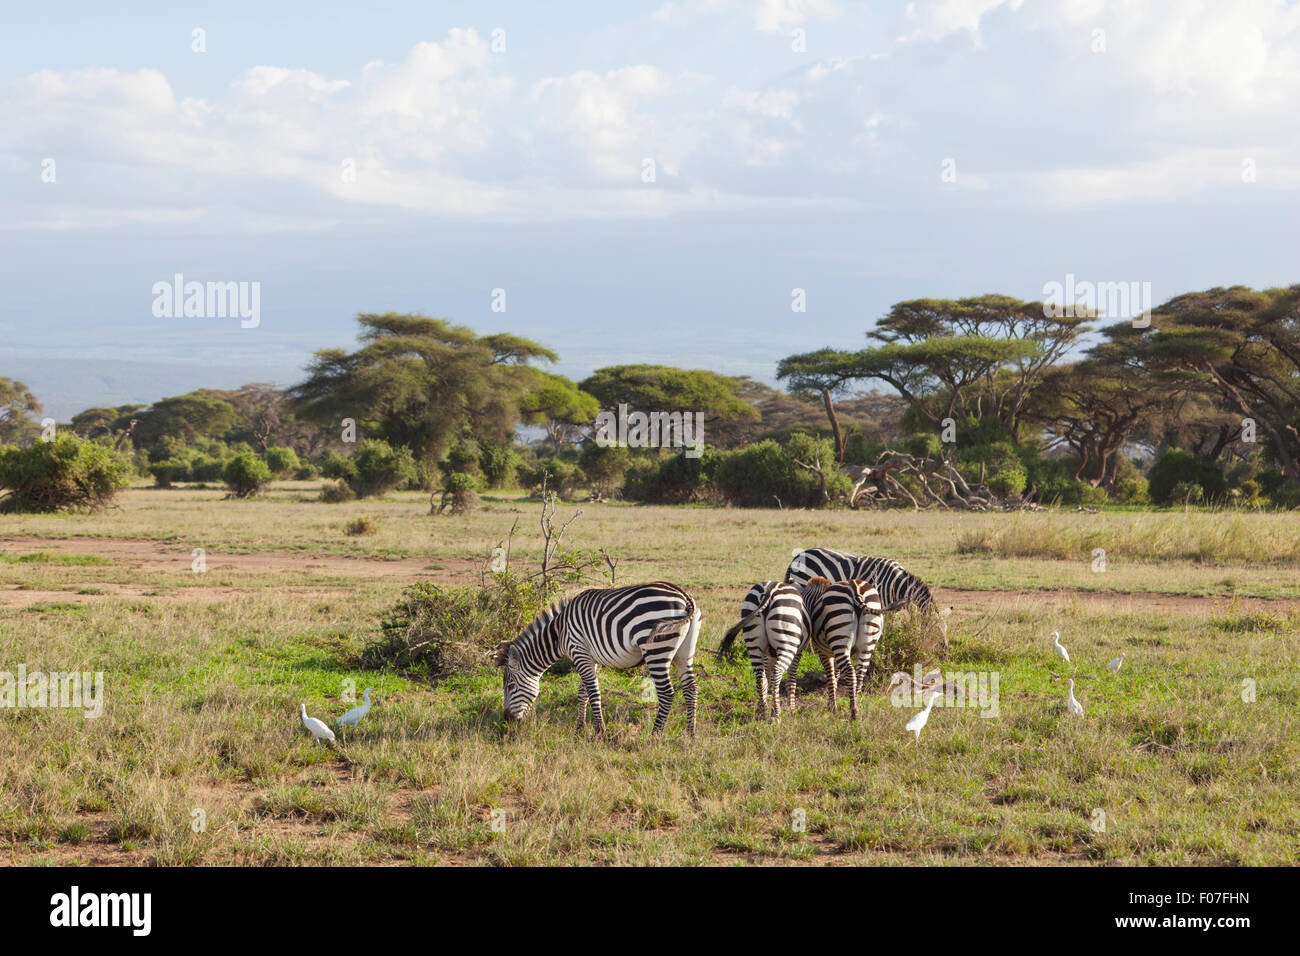 Zebras in Amboseli National Park in Kenya. Stock Photo